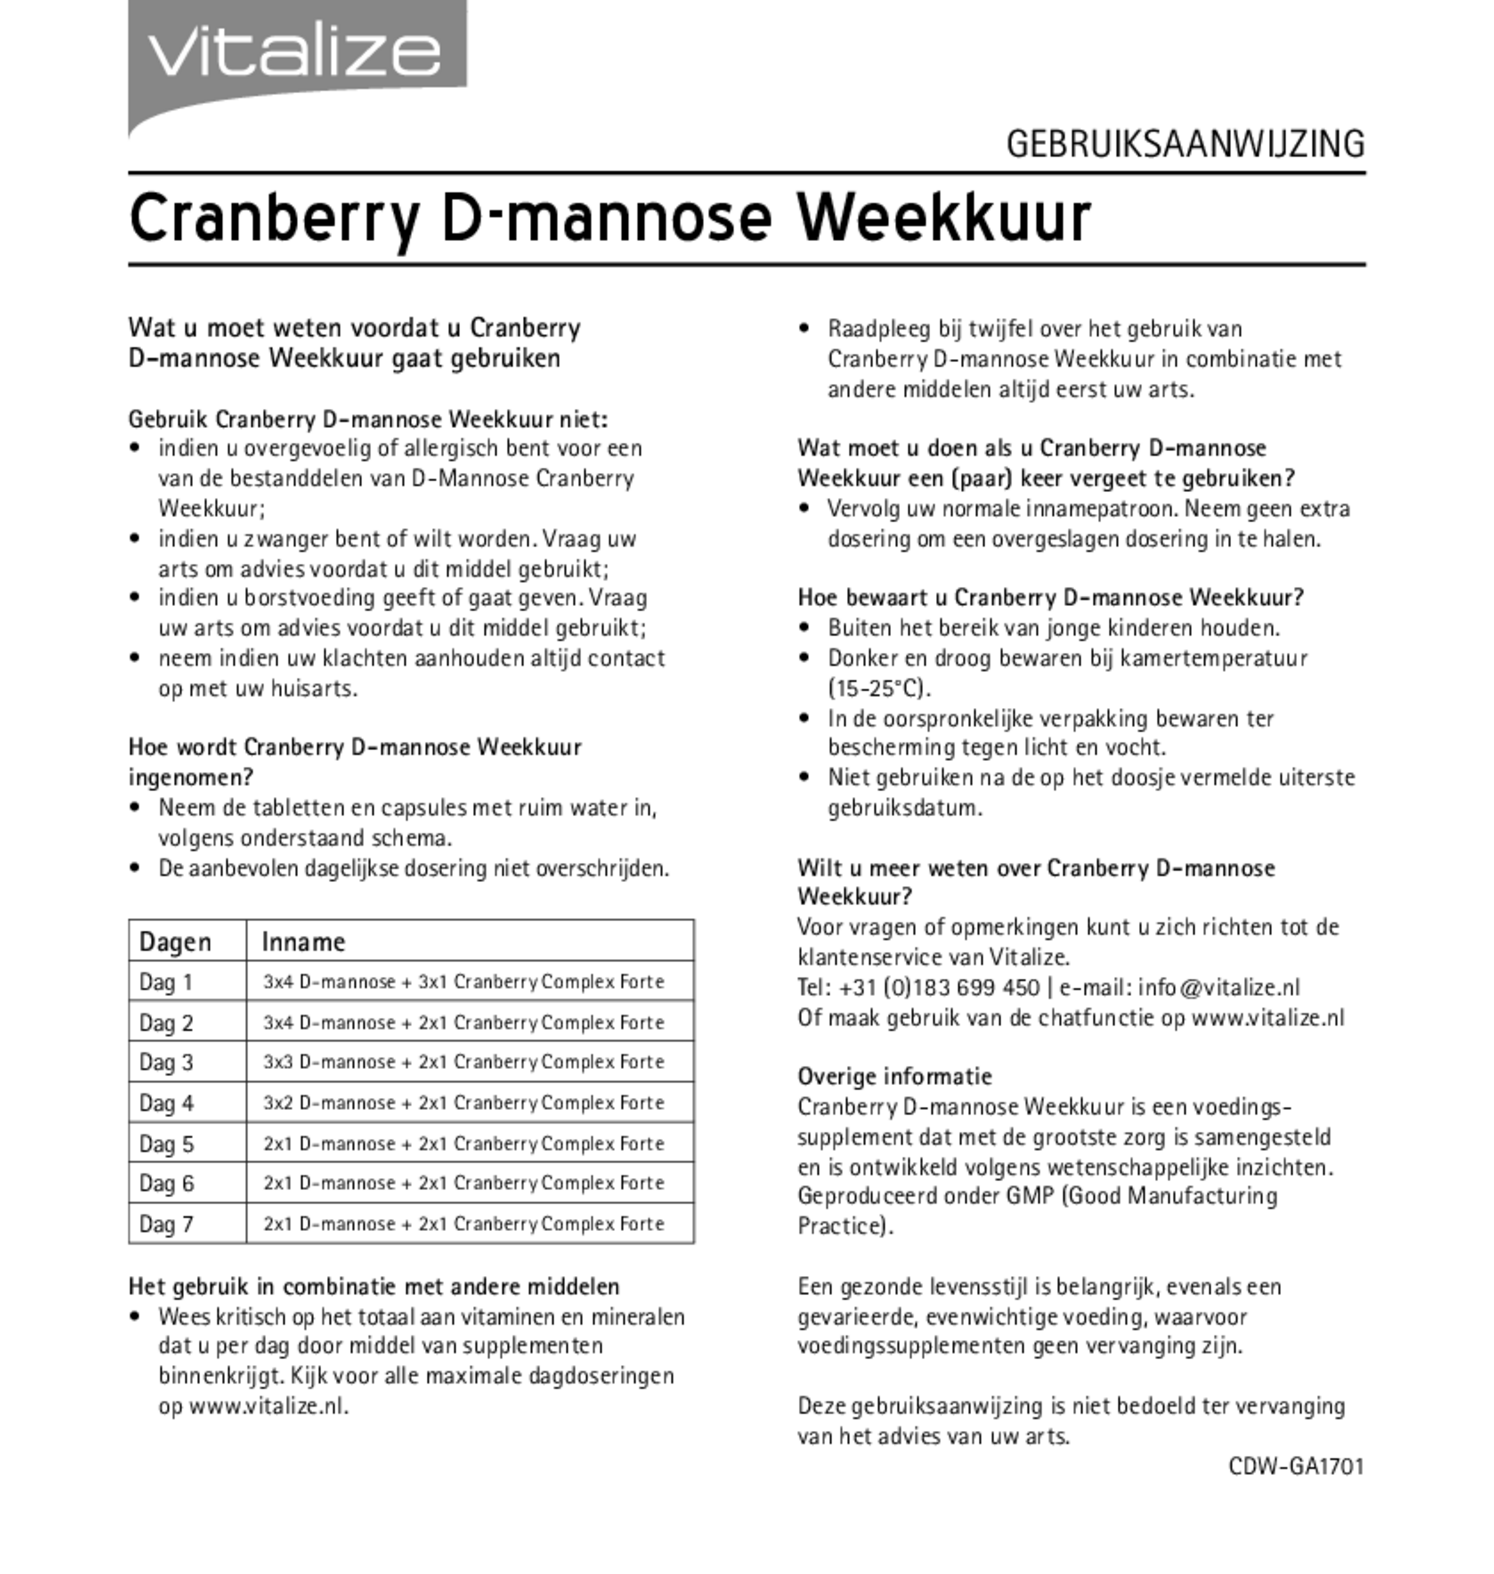 Cranberry D-mannose Weekkuur Capsules & Tabletten afbeelding van document #2, gebruiksaanwijzing